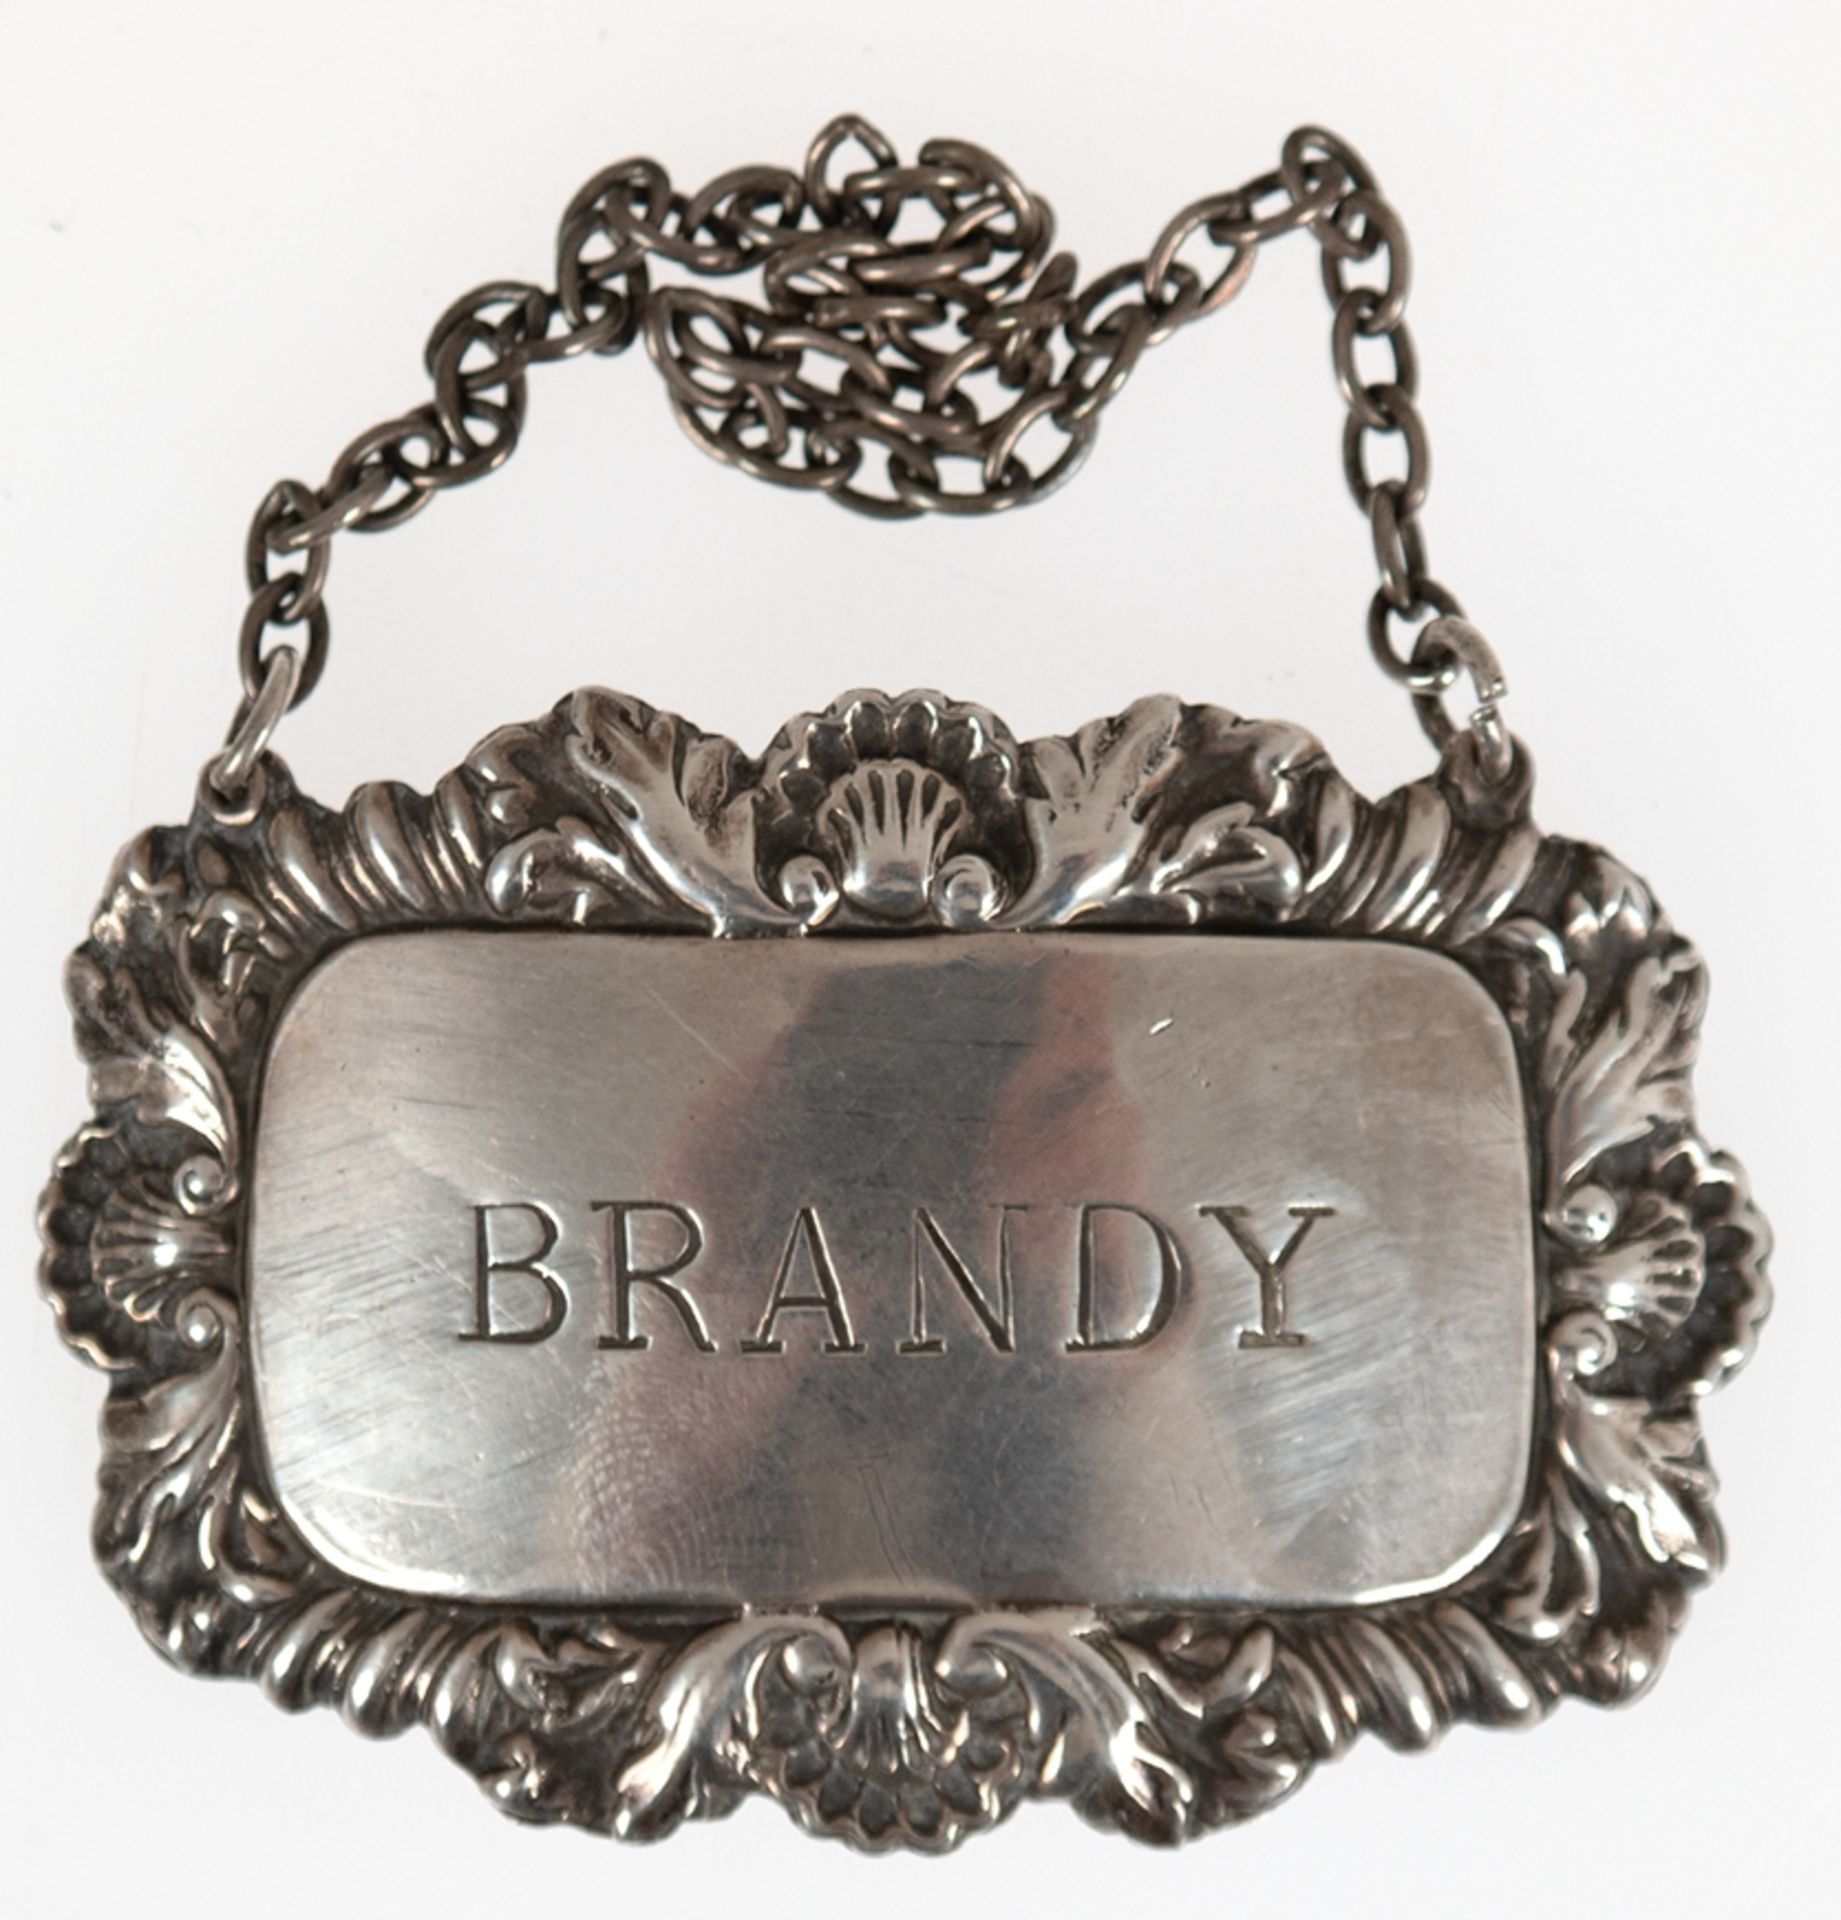 Flaschenschild "Brandy", Birmingham 1957, Silber, punziert, Reliefkante, 6x4 cm